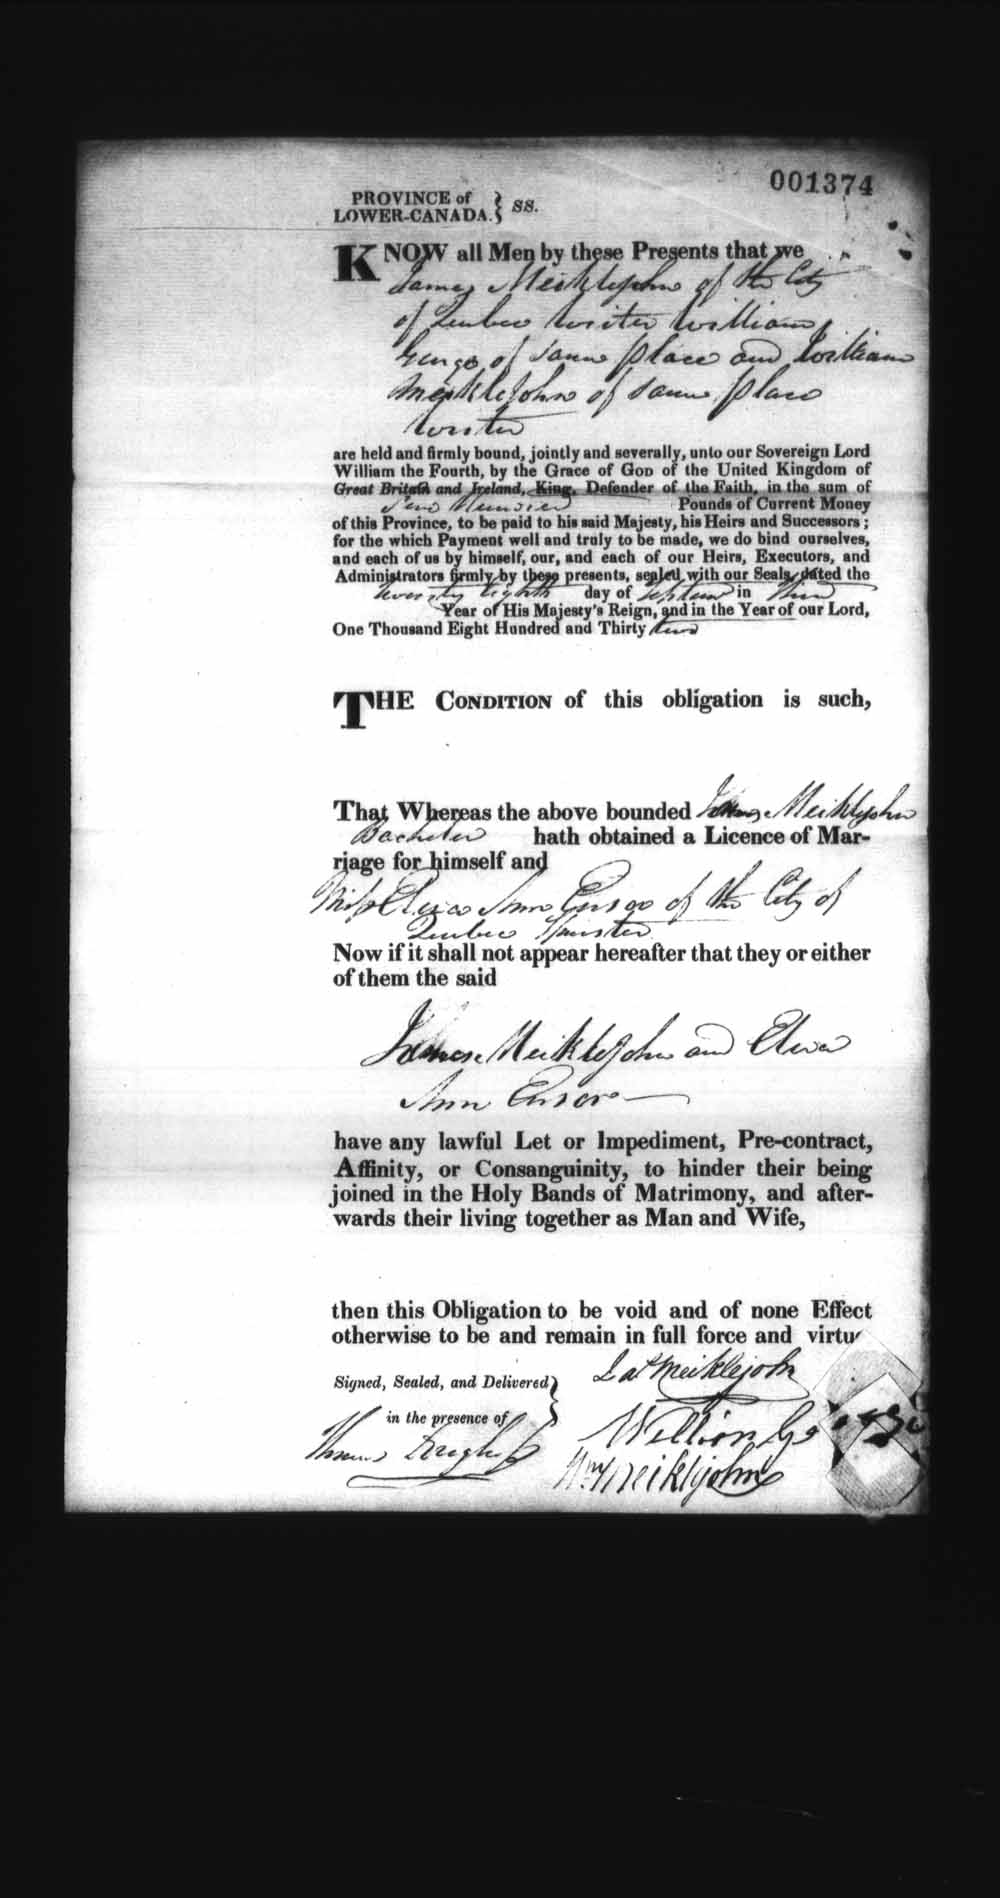 Page numérisé de Cautionnements de mariages pour le Haut-Canada et le Bas-Canada (1779-1865) pour l'image numéro: e008237563